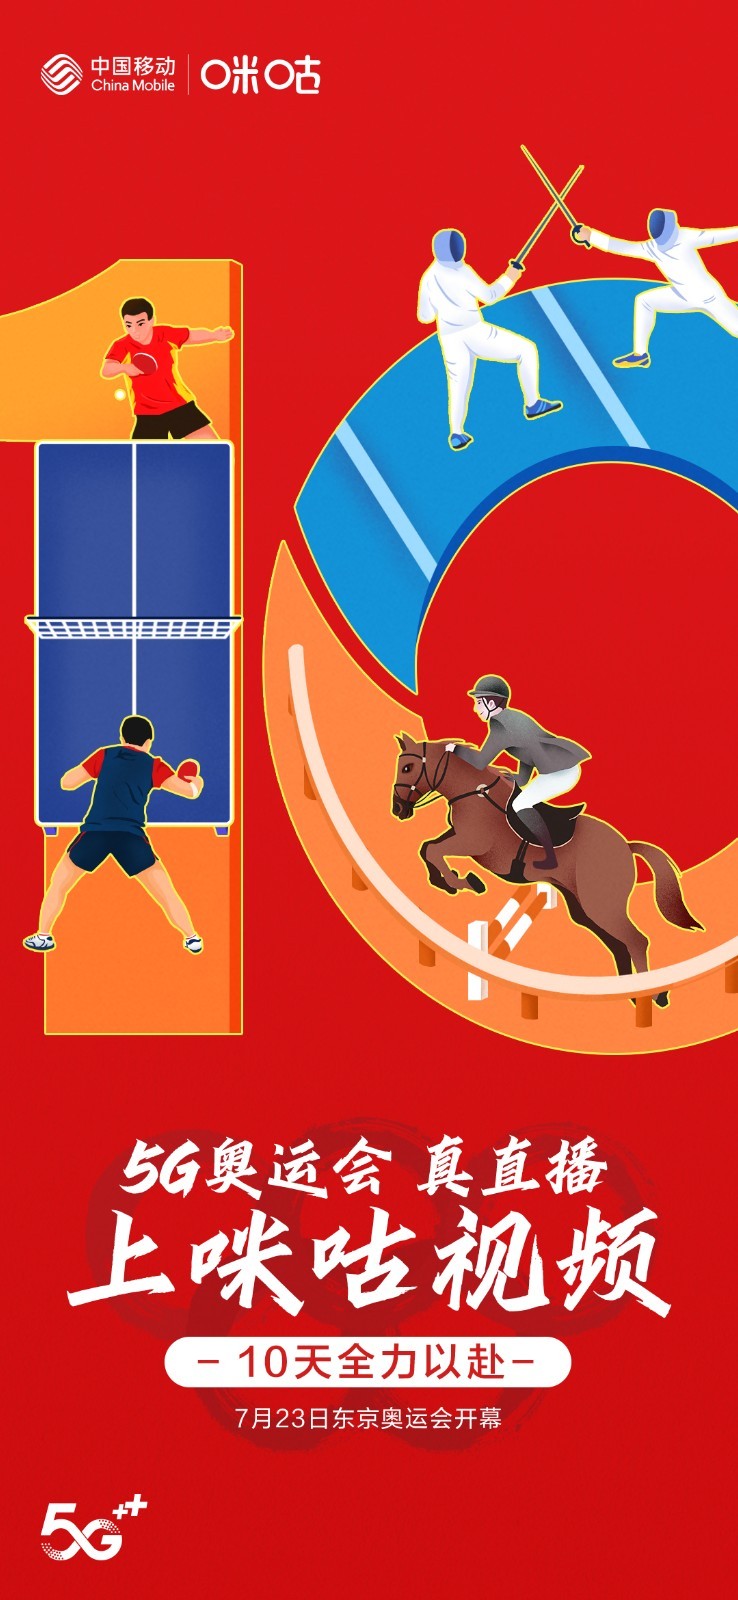 奥运会进入10天倒计时，中国移动咪咕5G云赛场见证最特别奥运